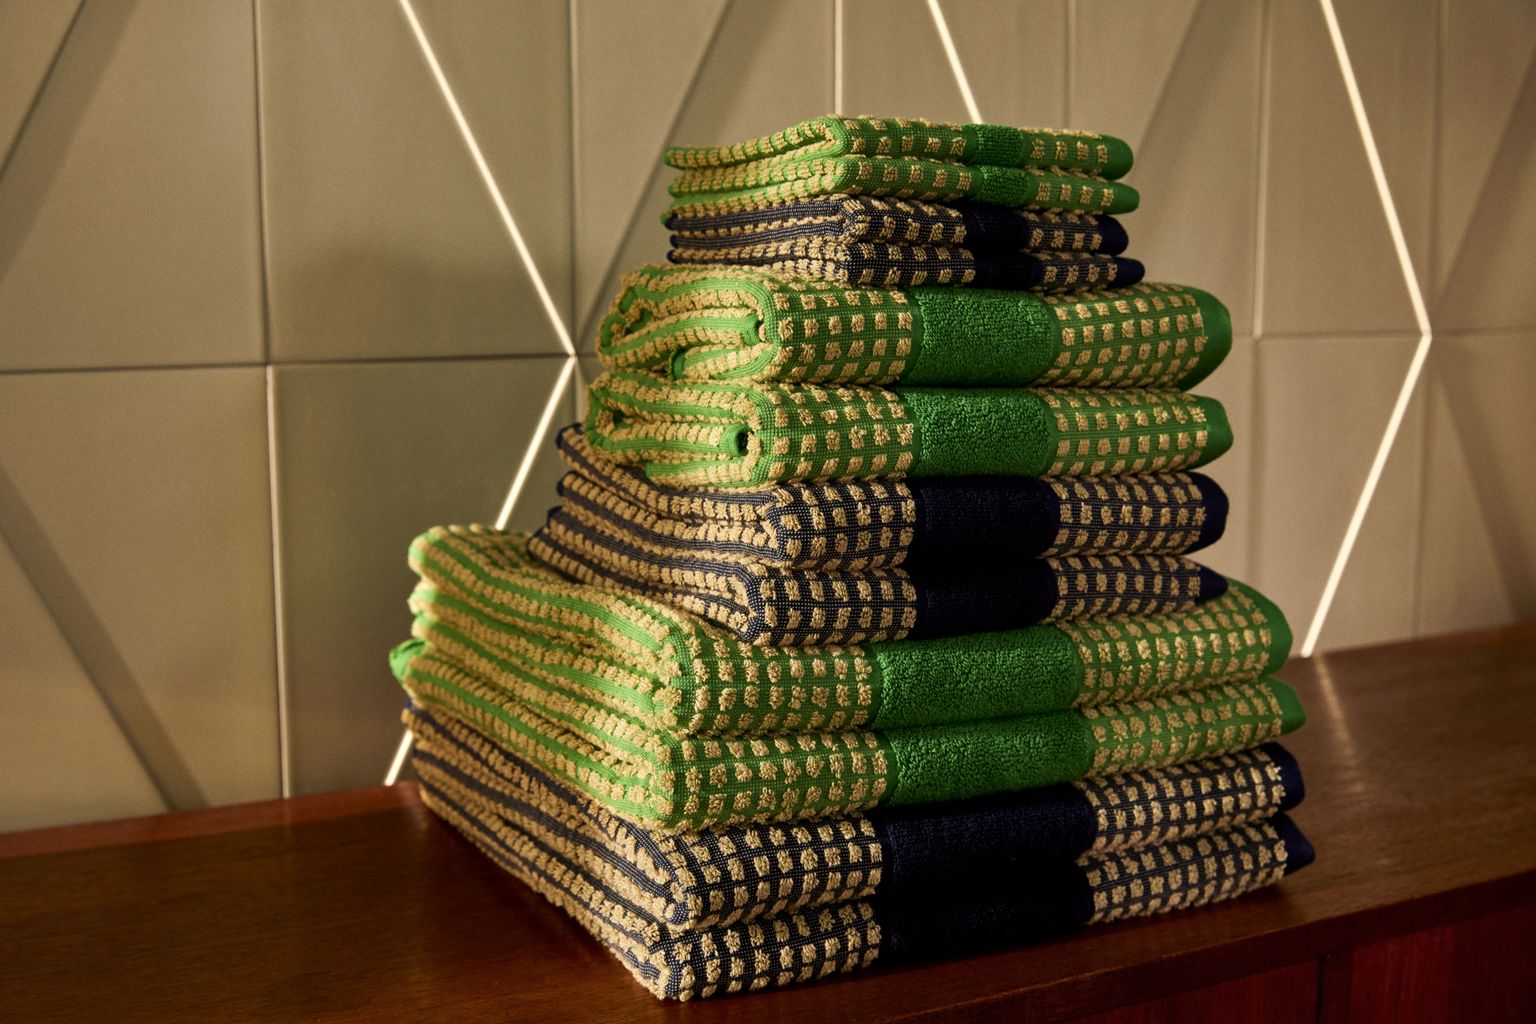 Juna Check Washcloth 30 x30 cm, zielony/beżowy